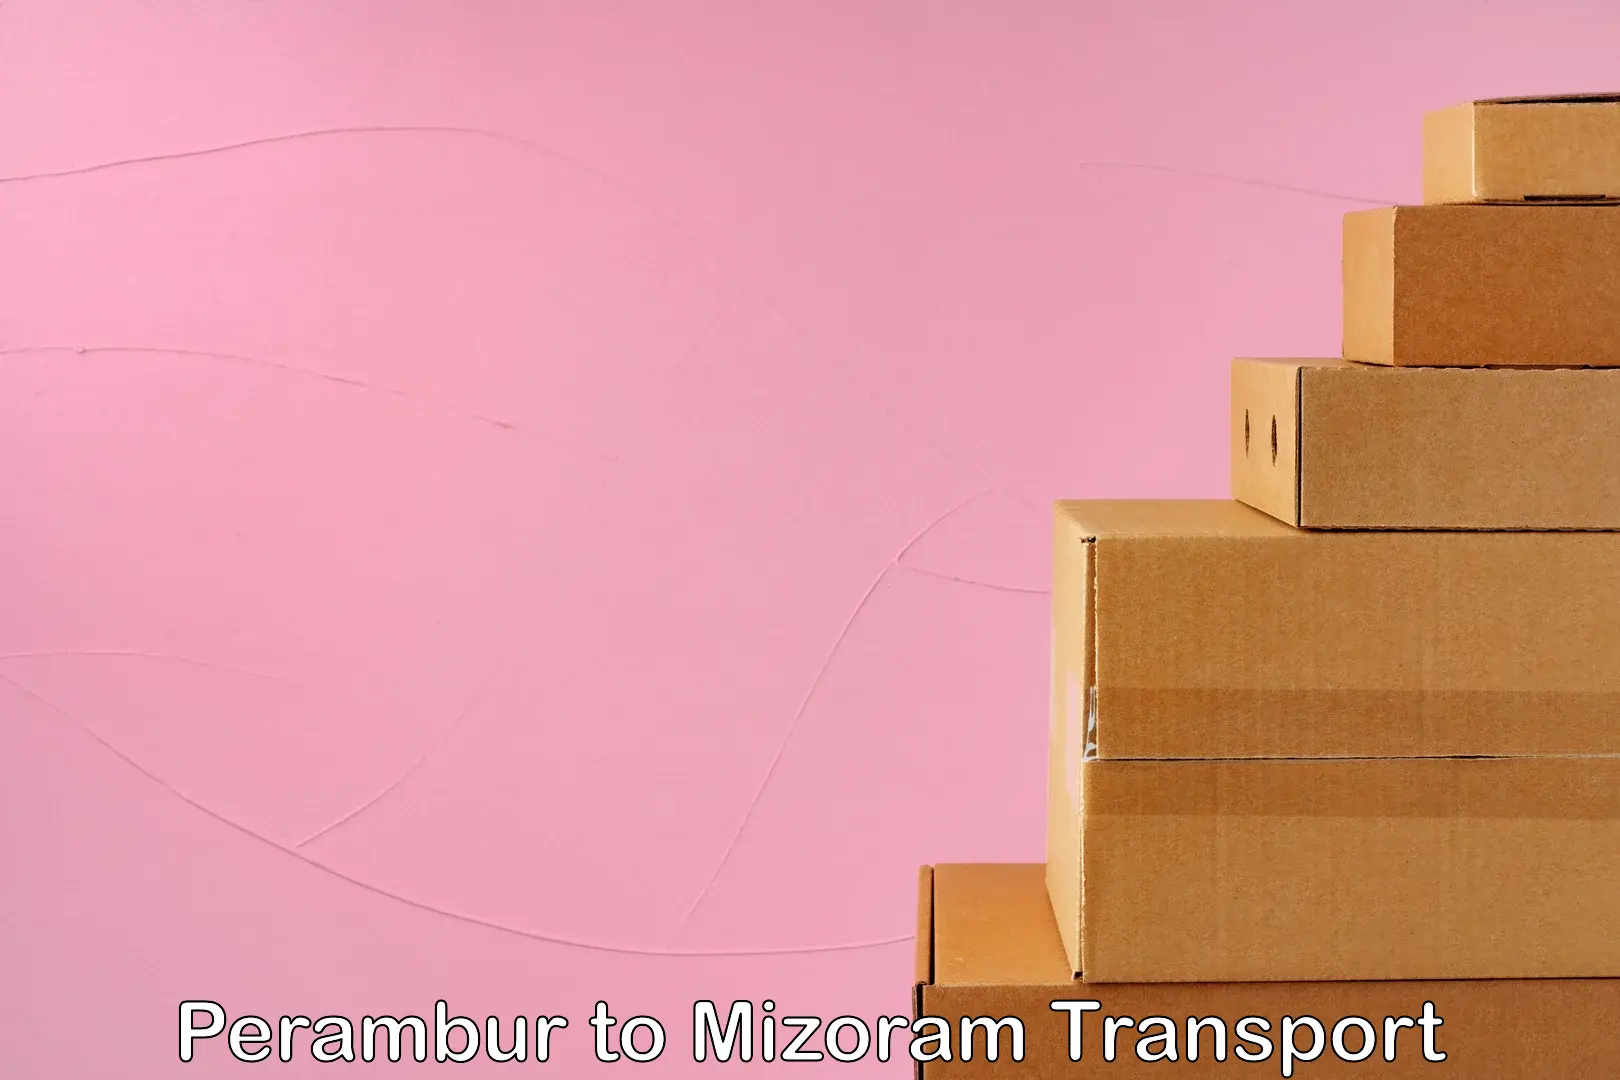 Online transport service Perambur to Mizoram